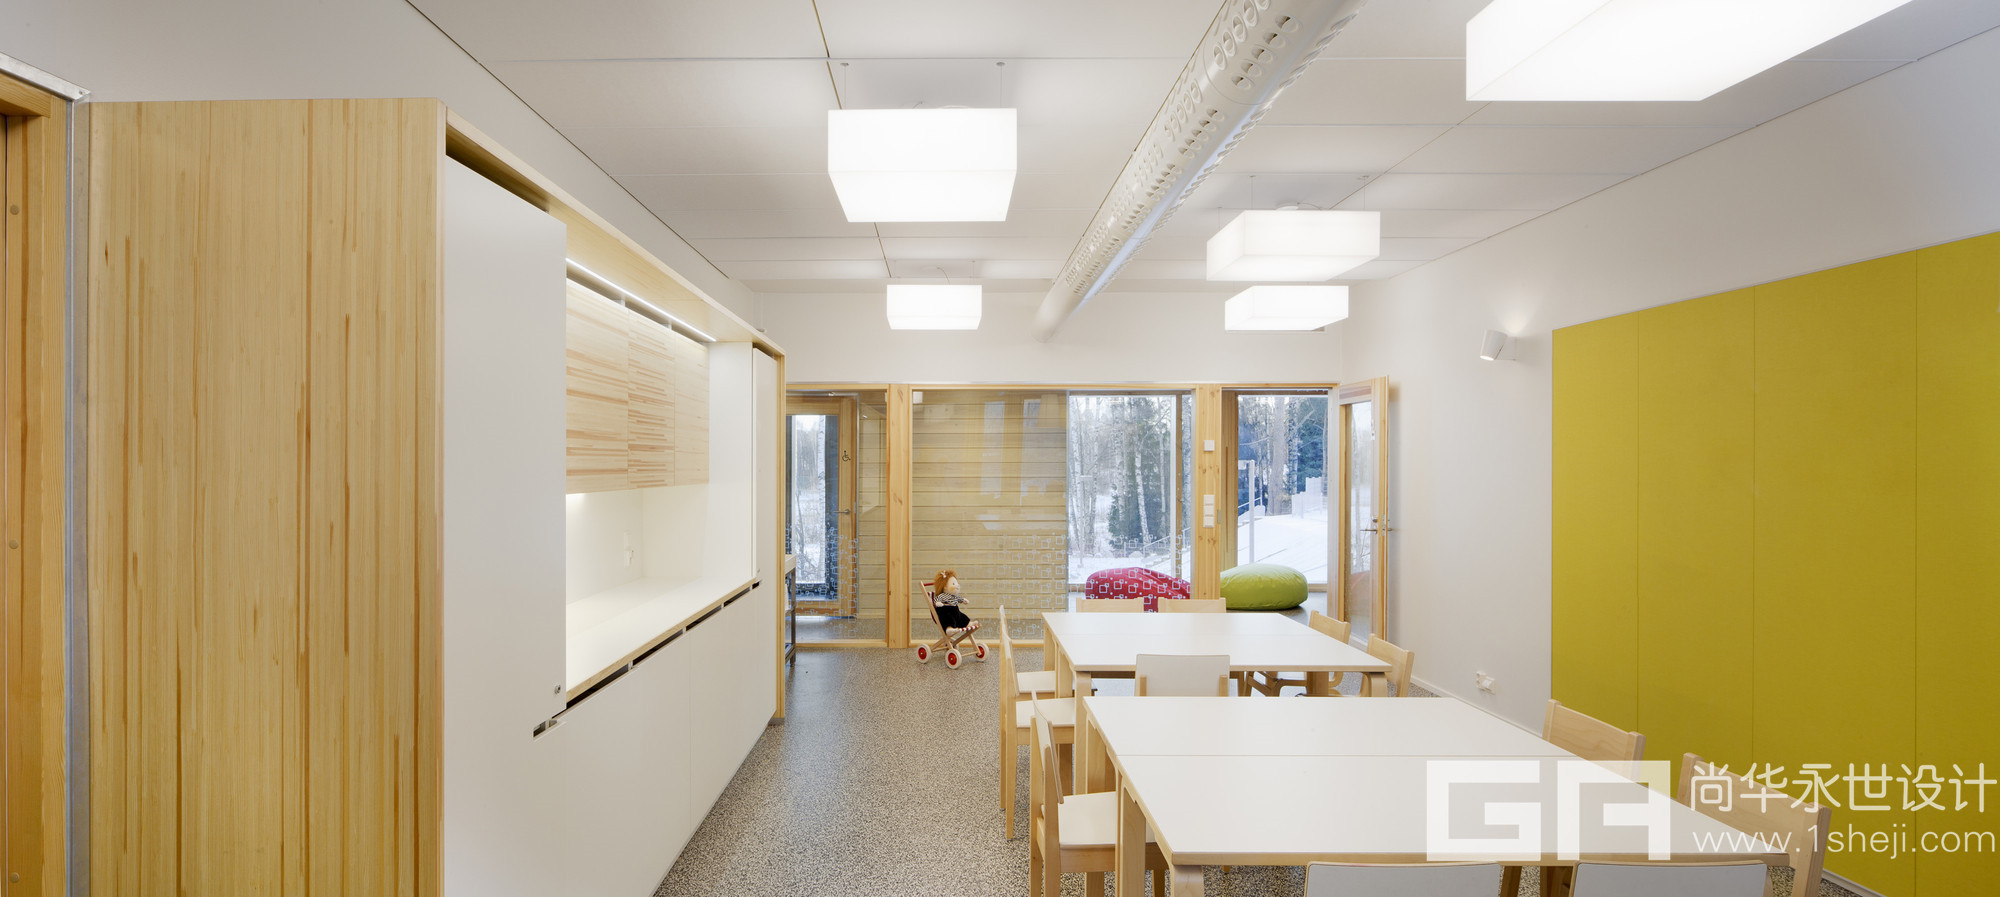 幼儿园设计案例芬兰赫尔辛基幼儿园